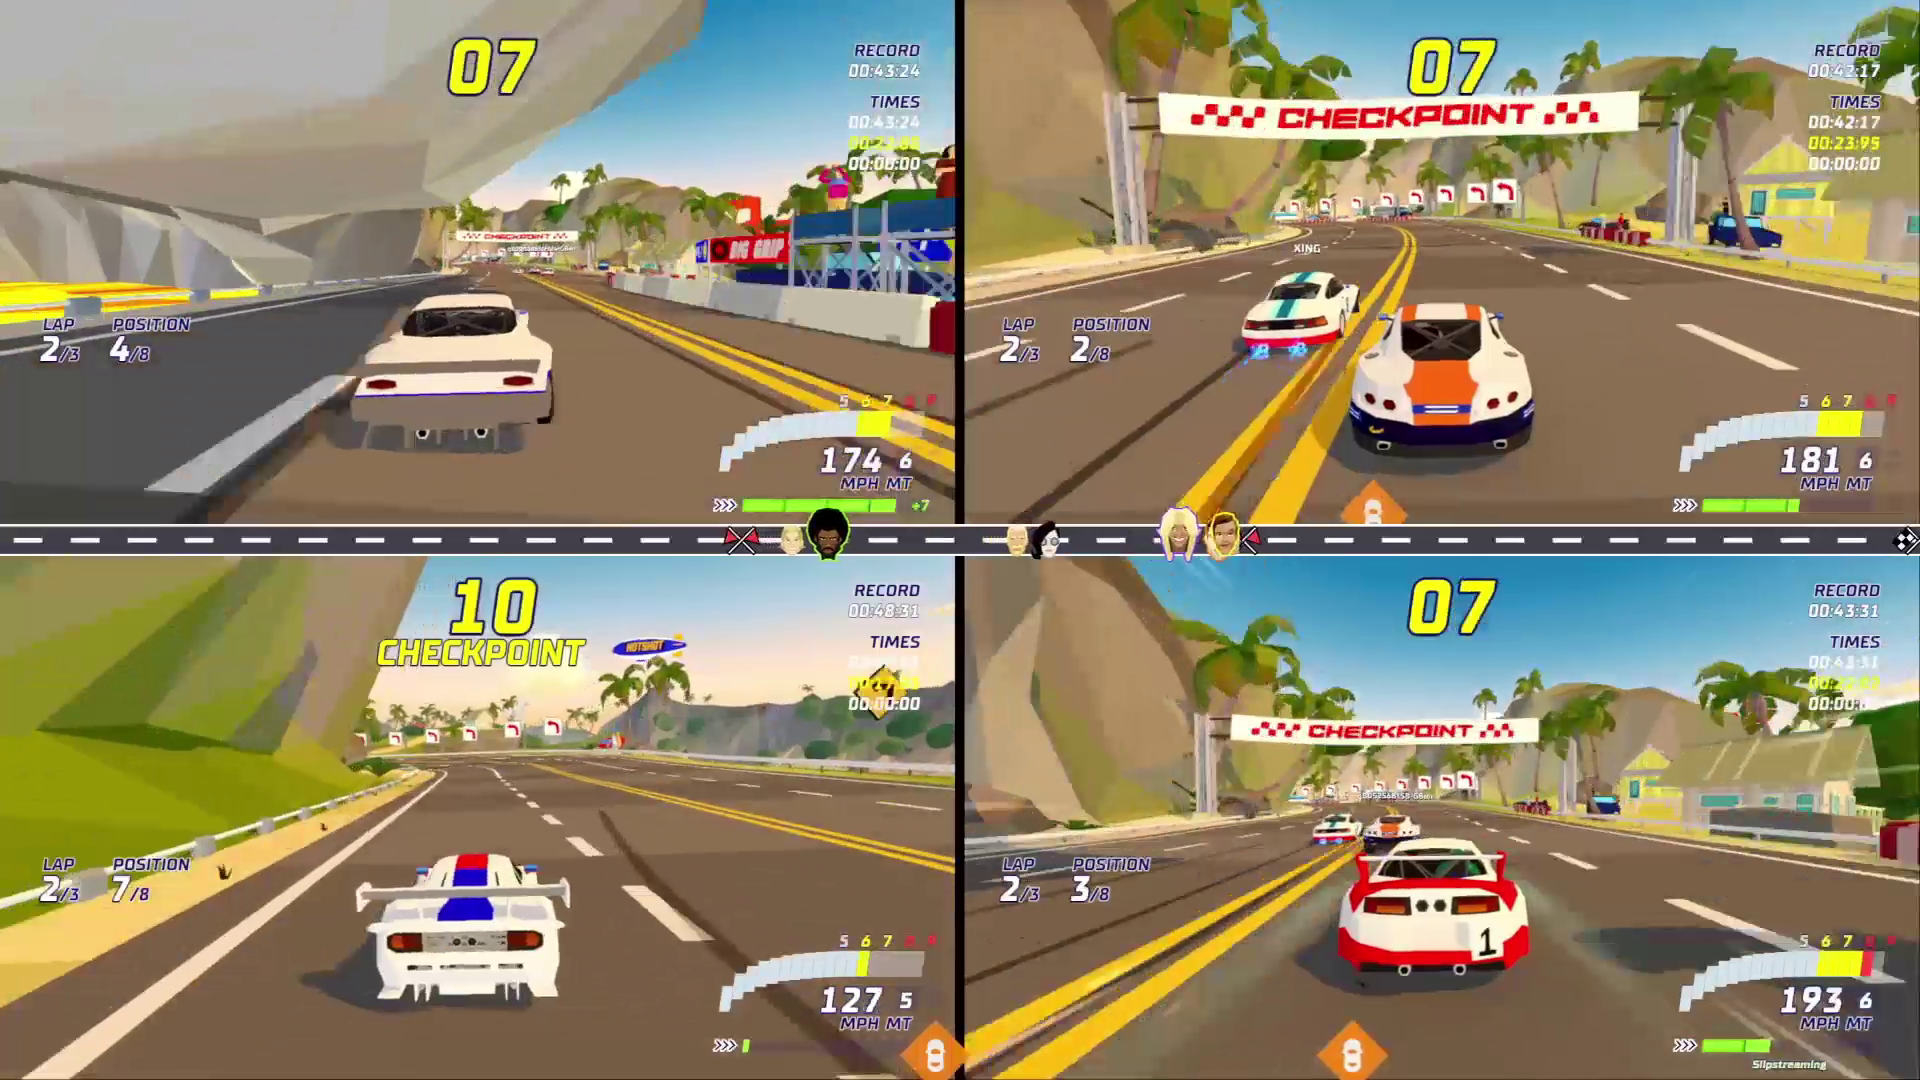 Playtest Hotshot Racing on Xbox One Aug 7 – Aug 10!